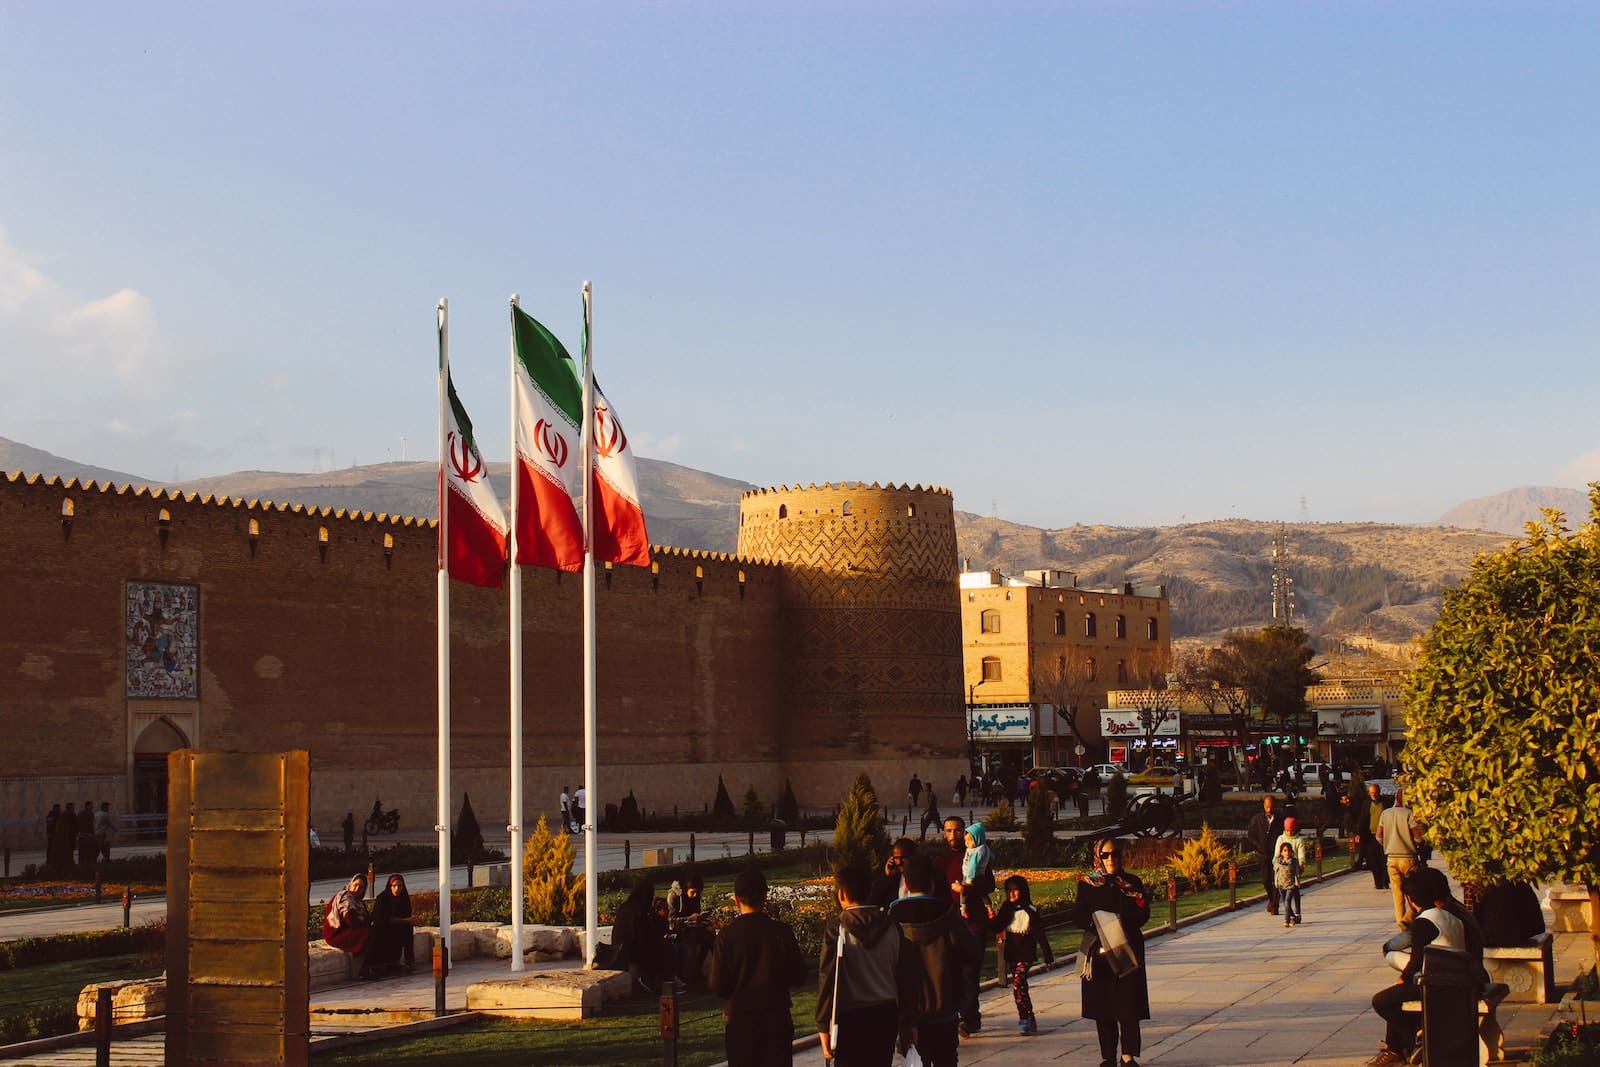 Karim Khan Citadel in Iran